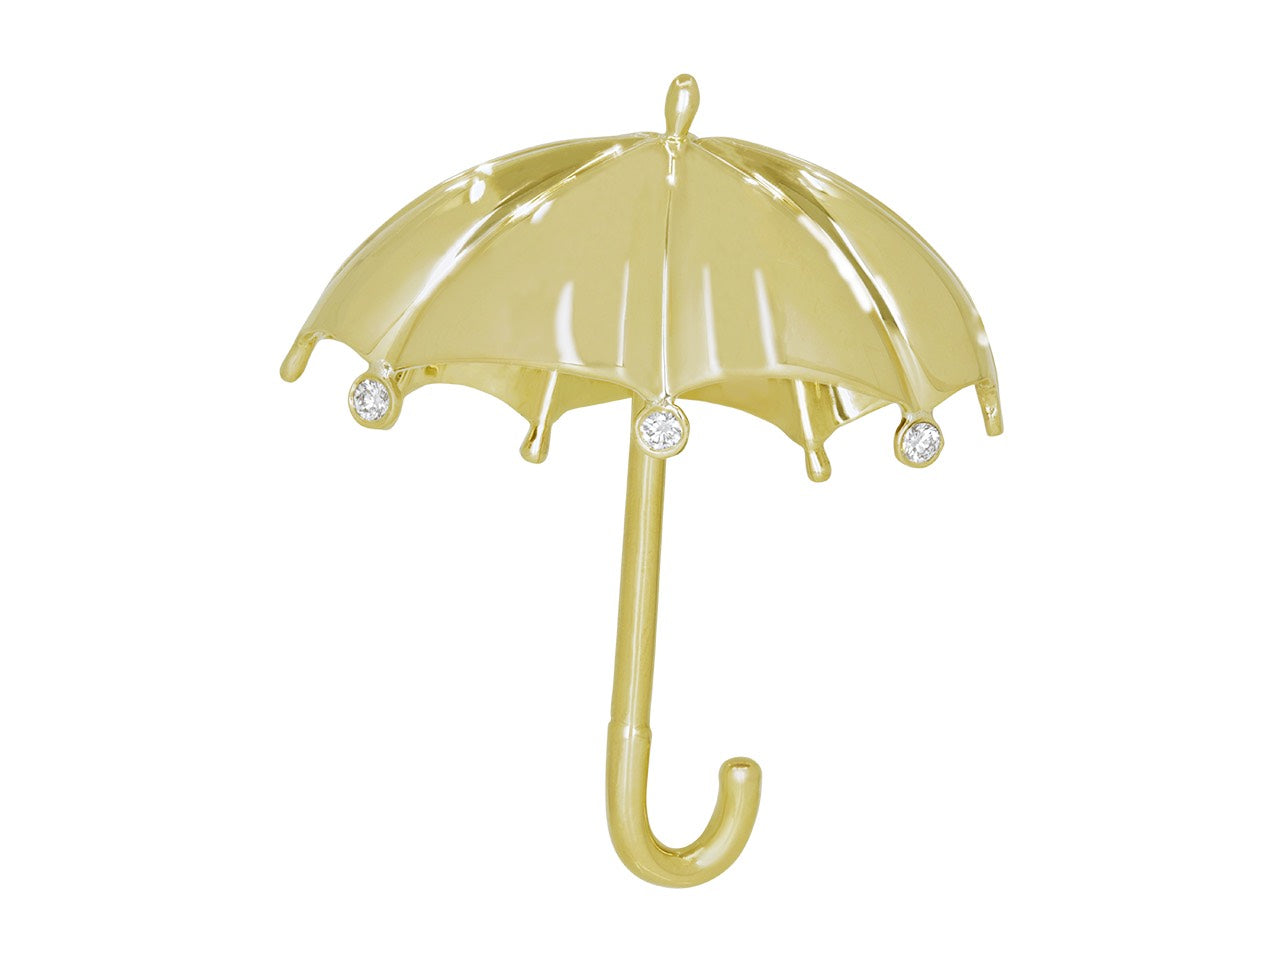 Tiffany & Co. Umbrella Brooch in 18K Gold